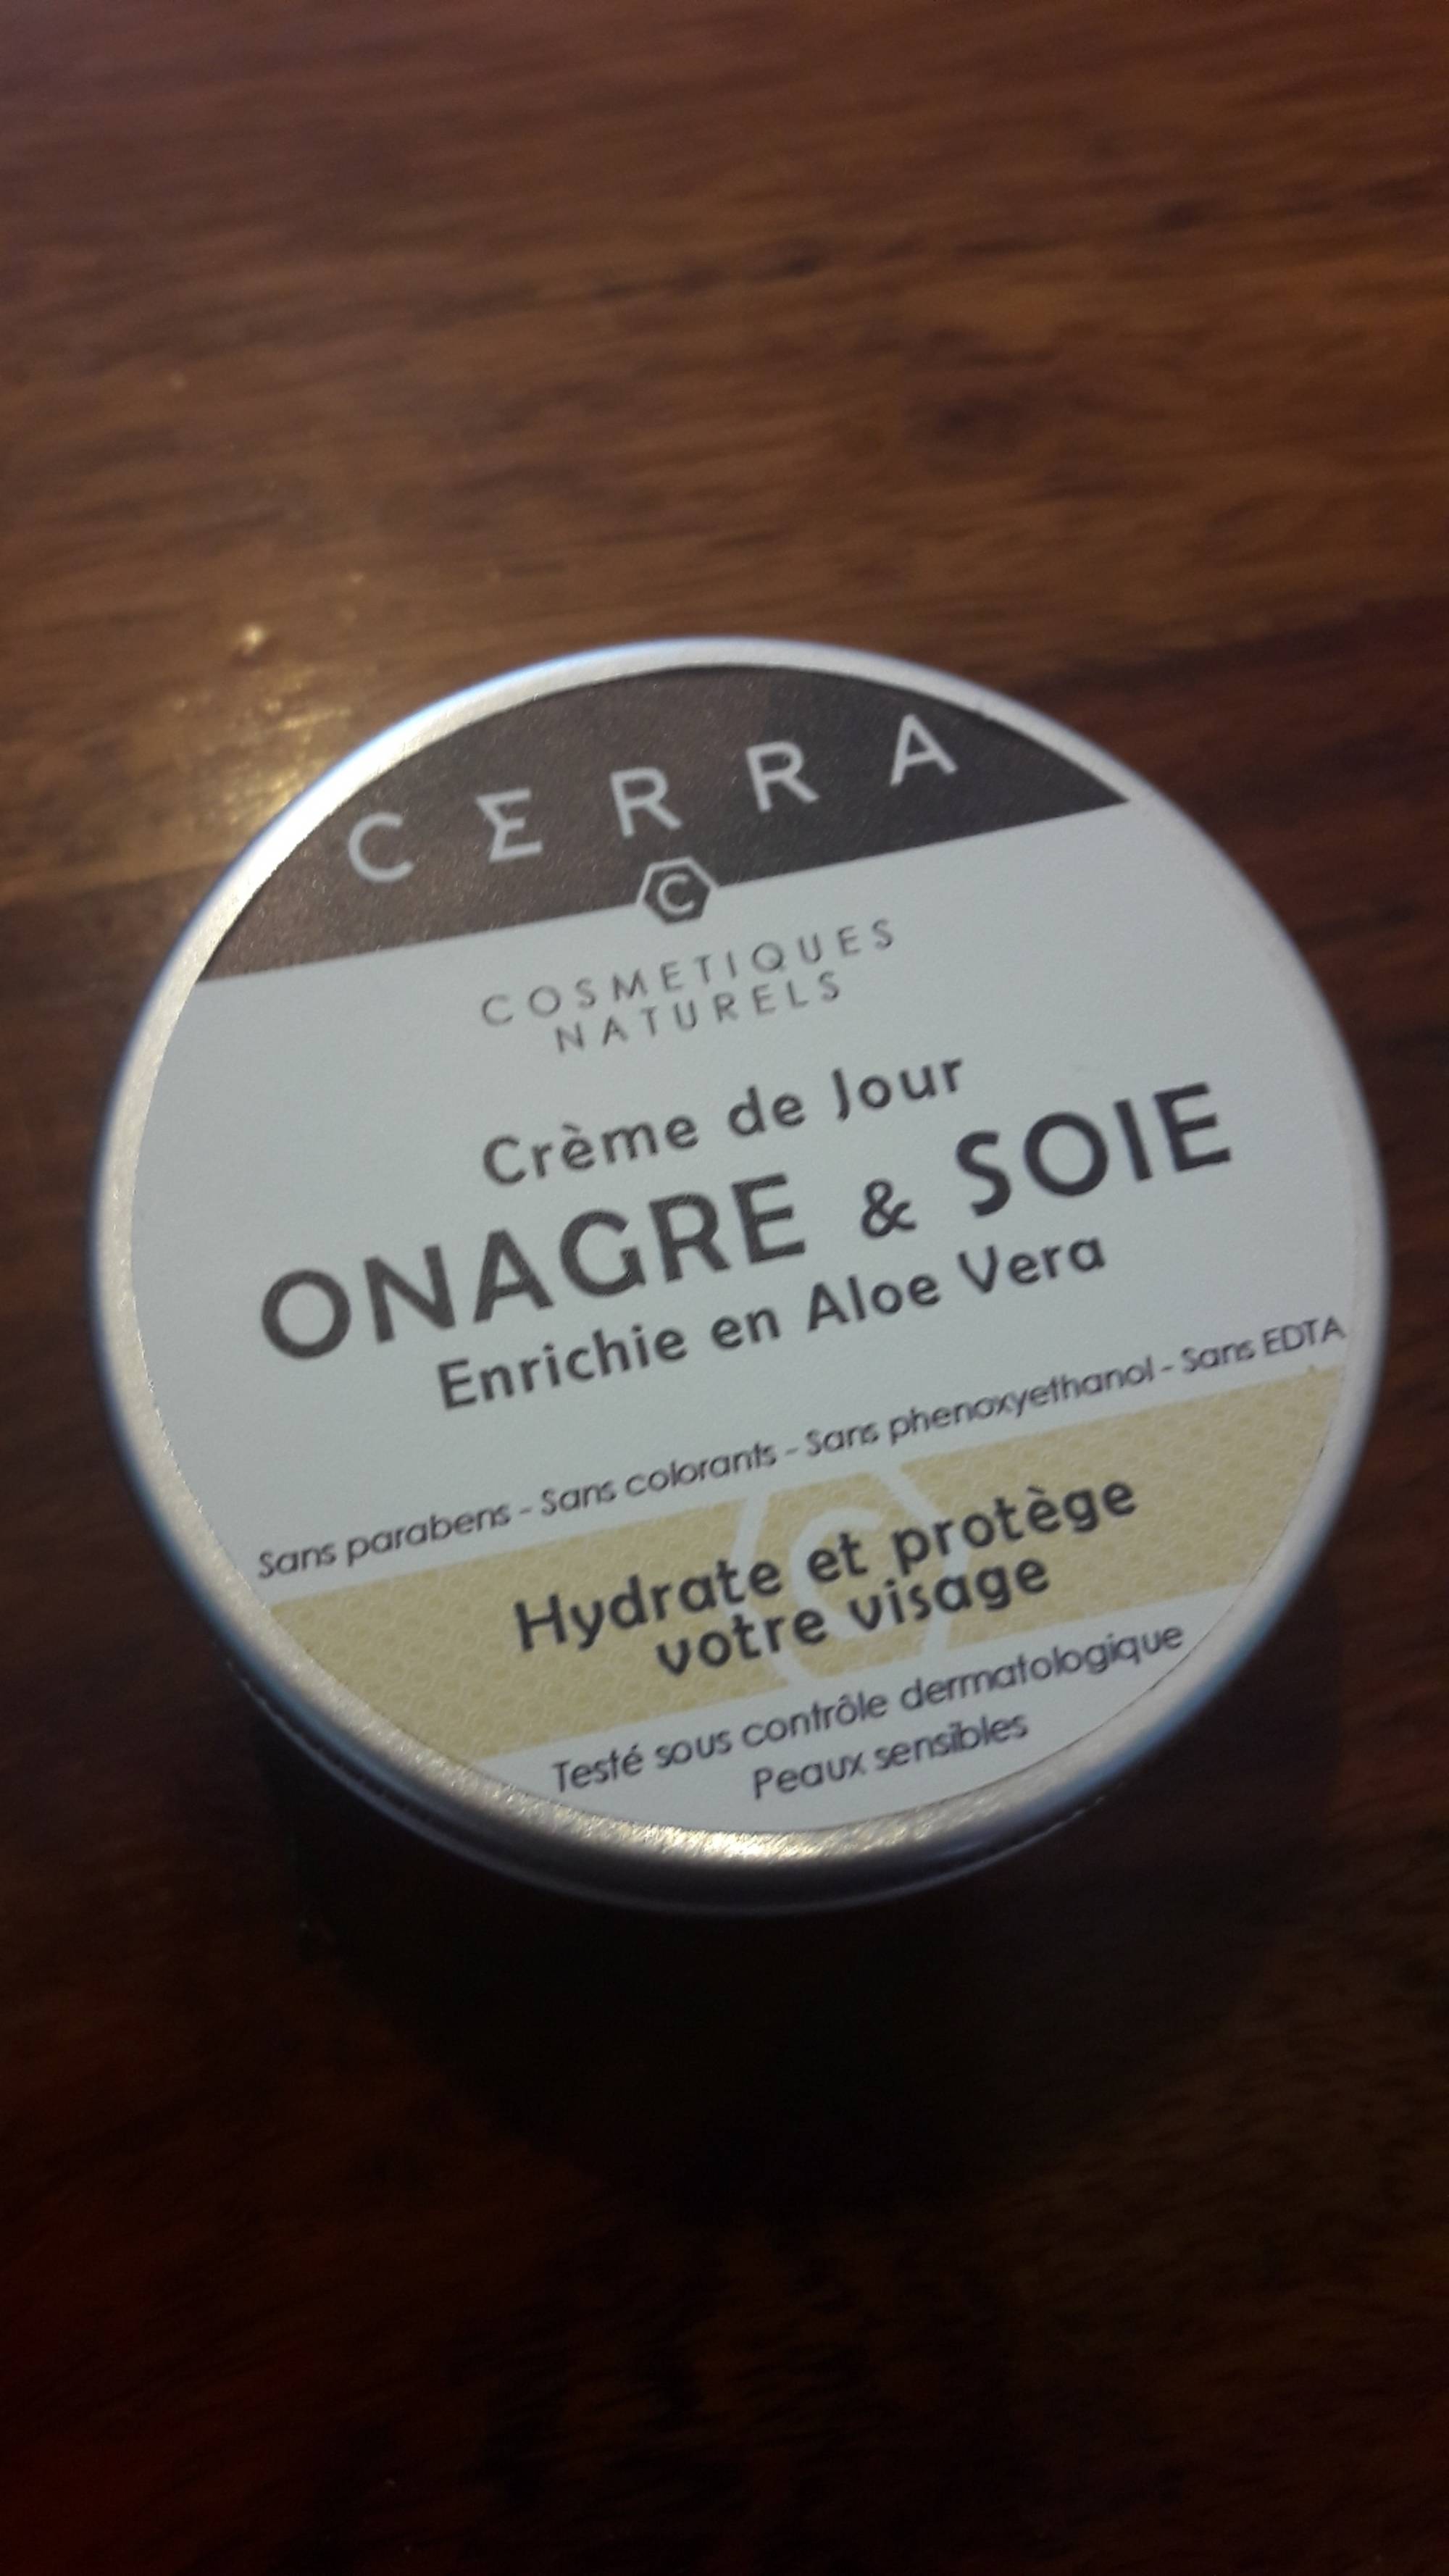 CERRA - Onagre & soie - Crème de jour 